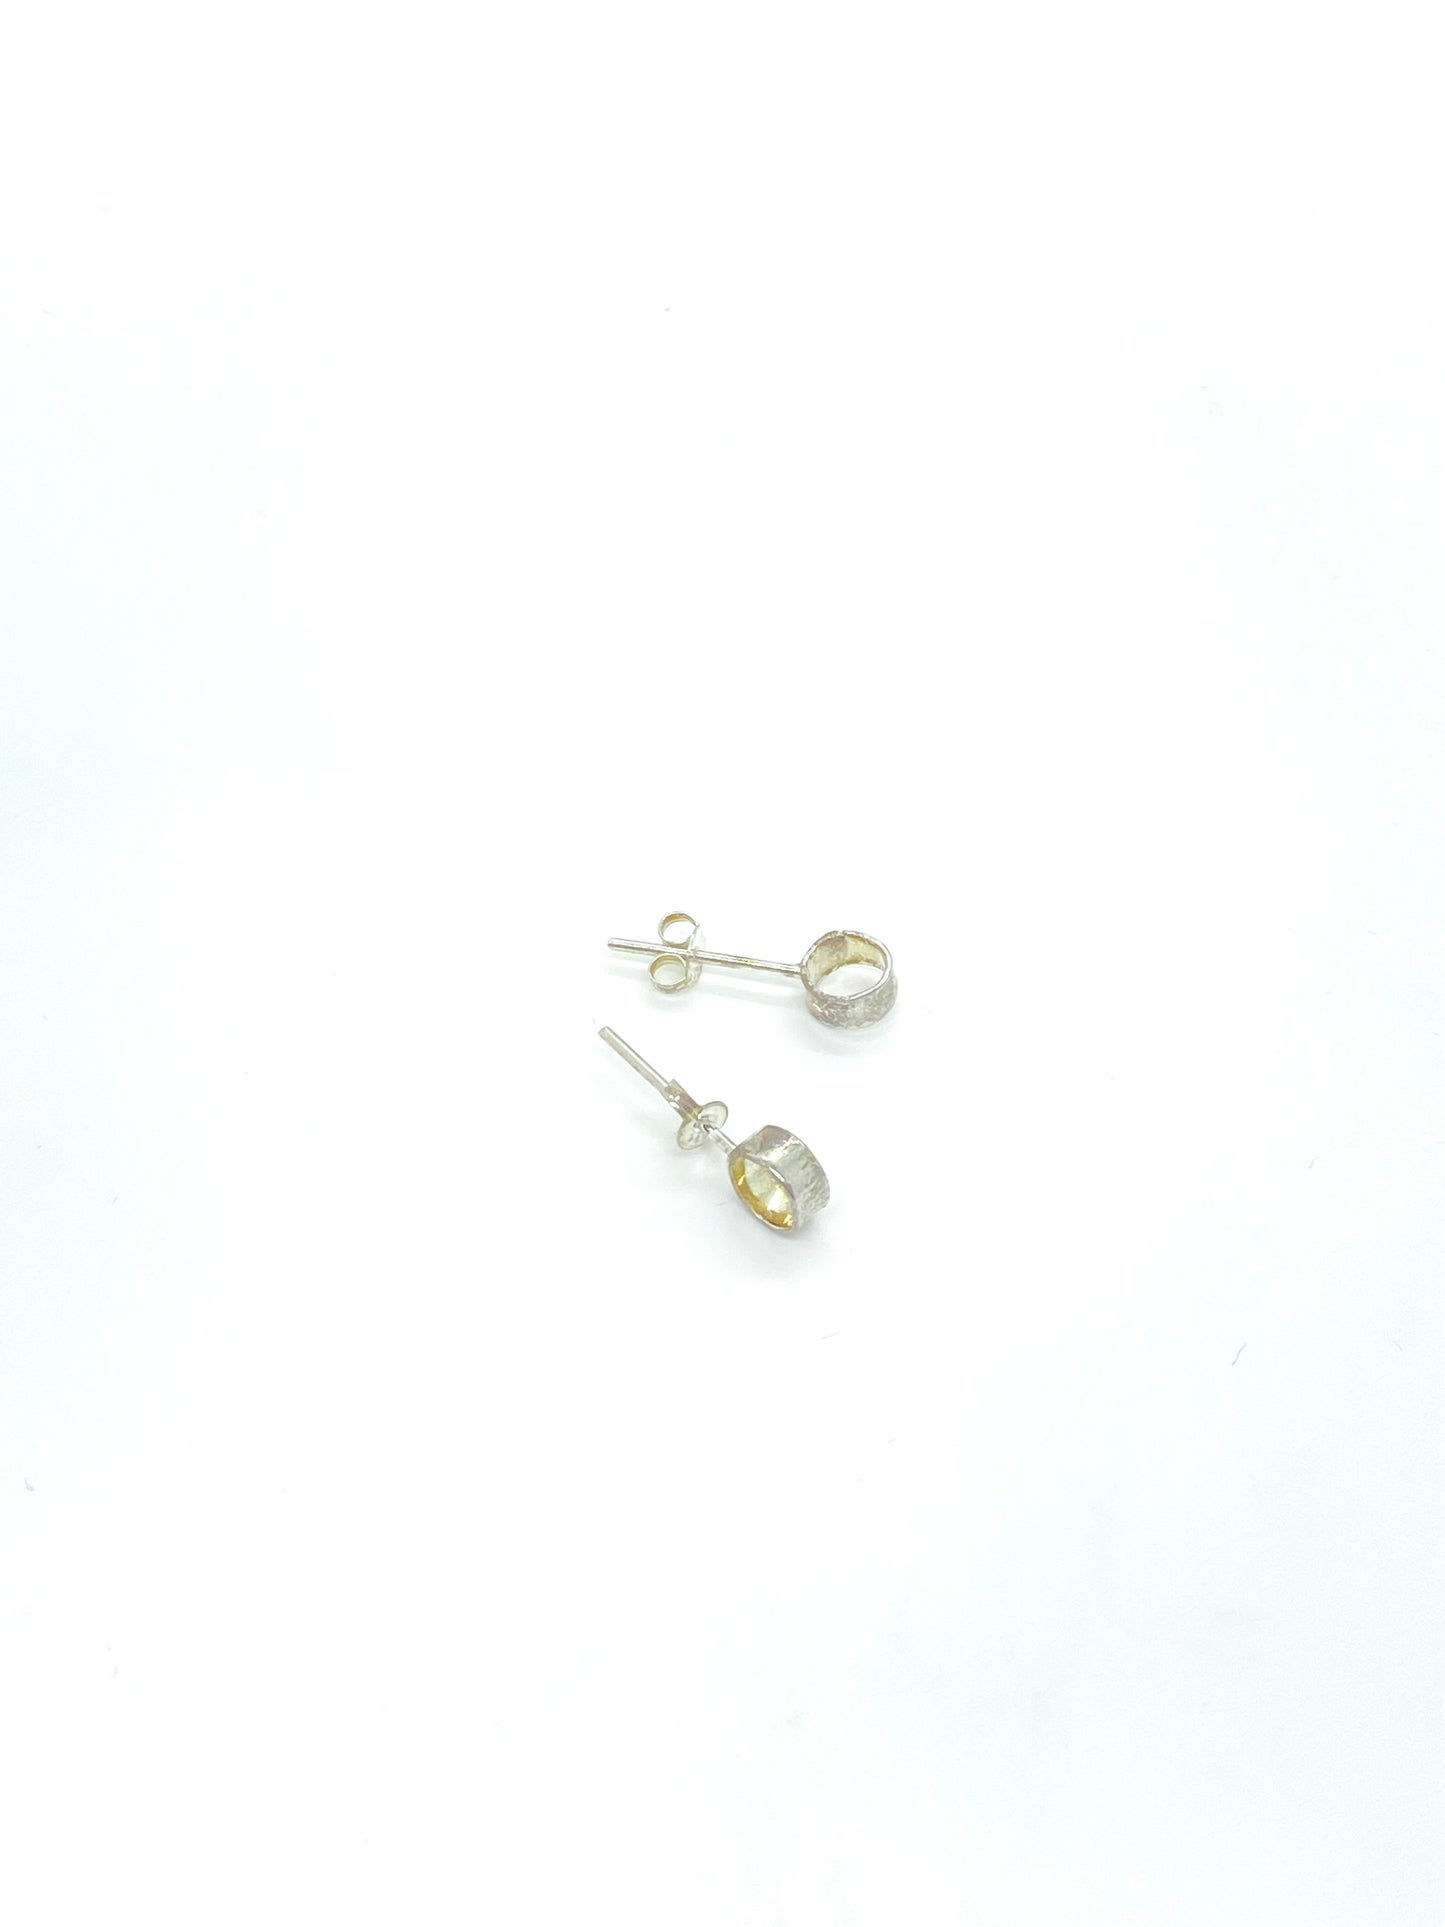 Silver Studs Earrings  (#118)